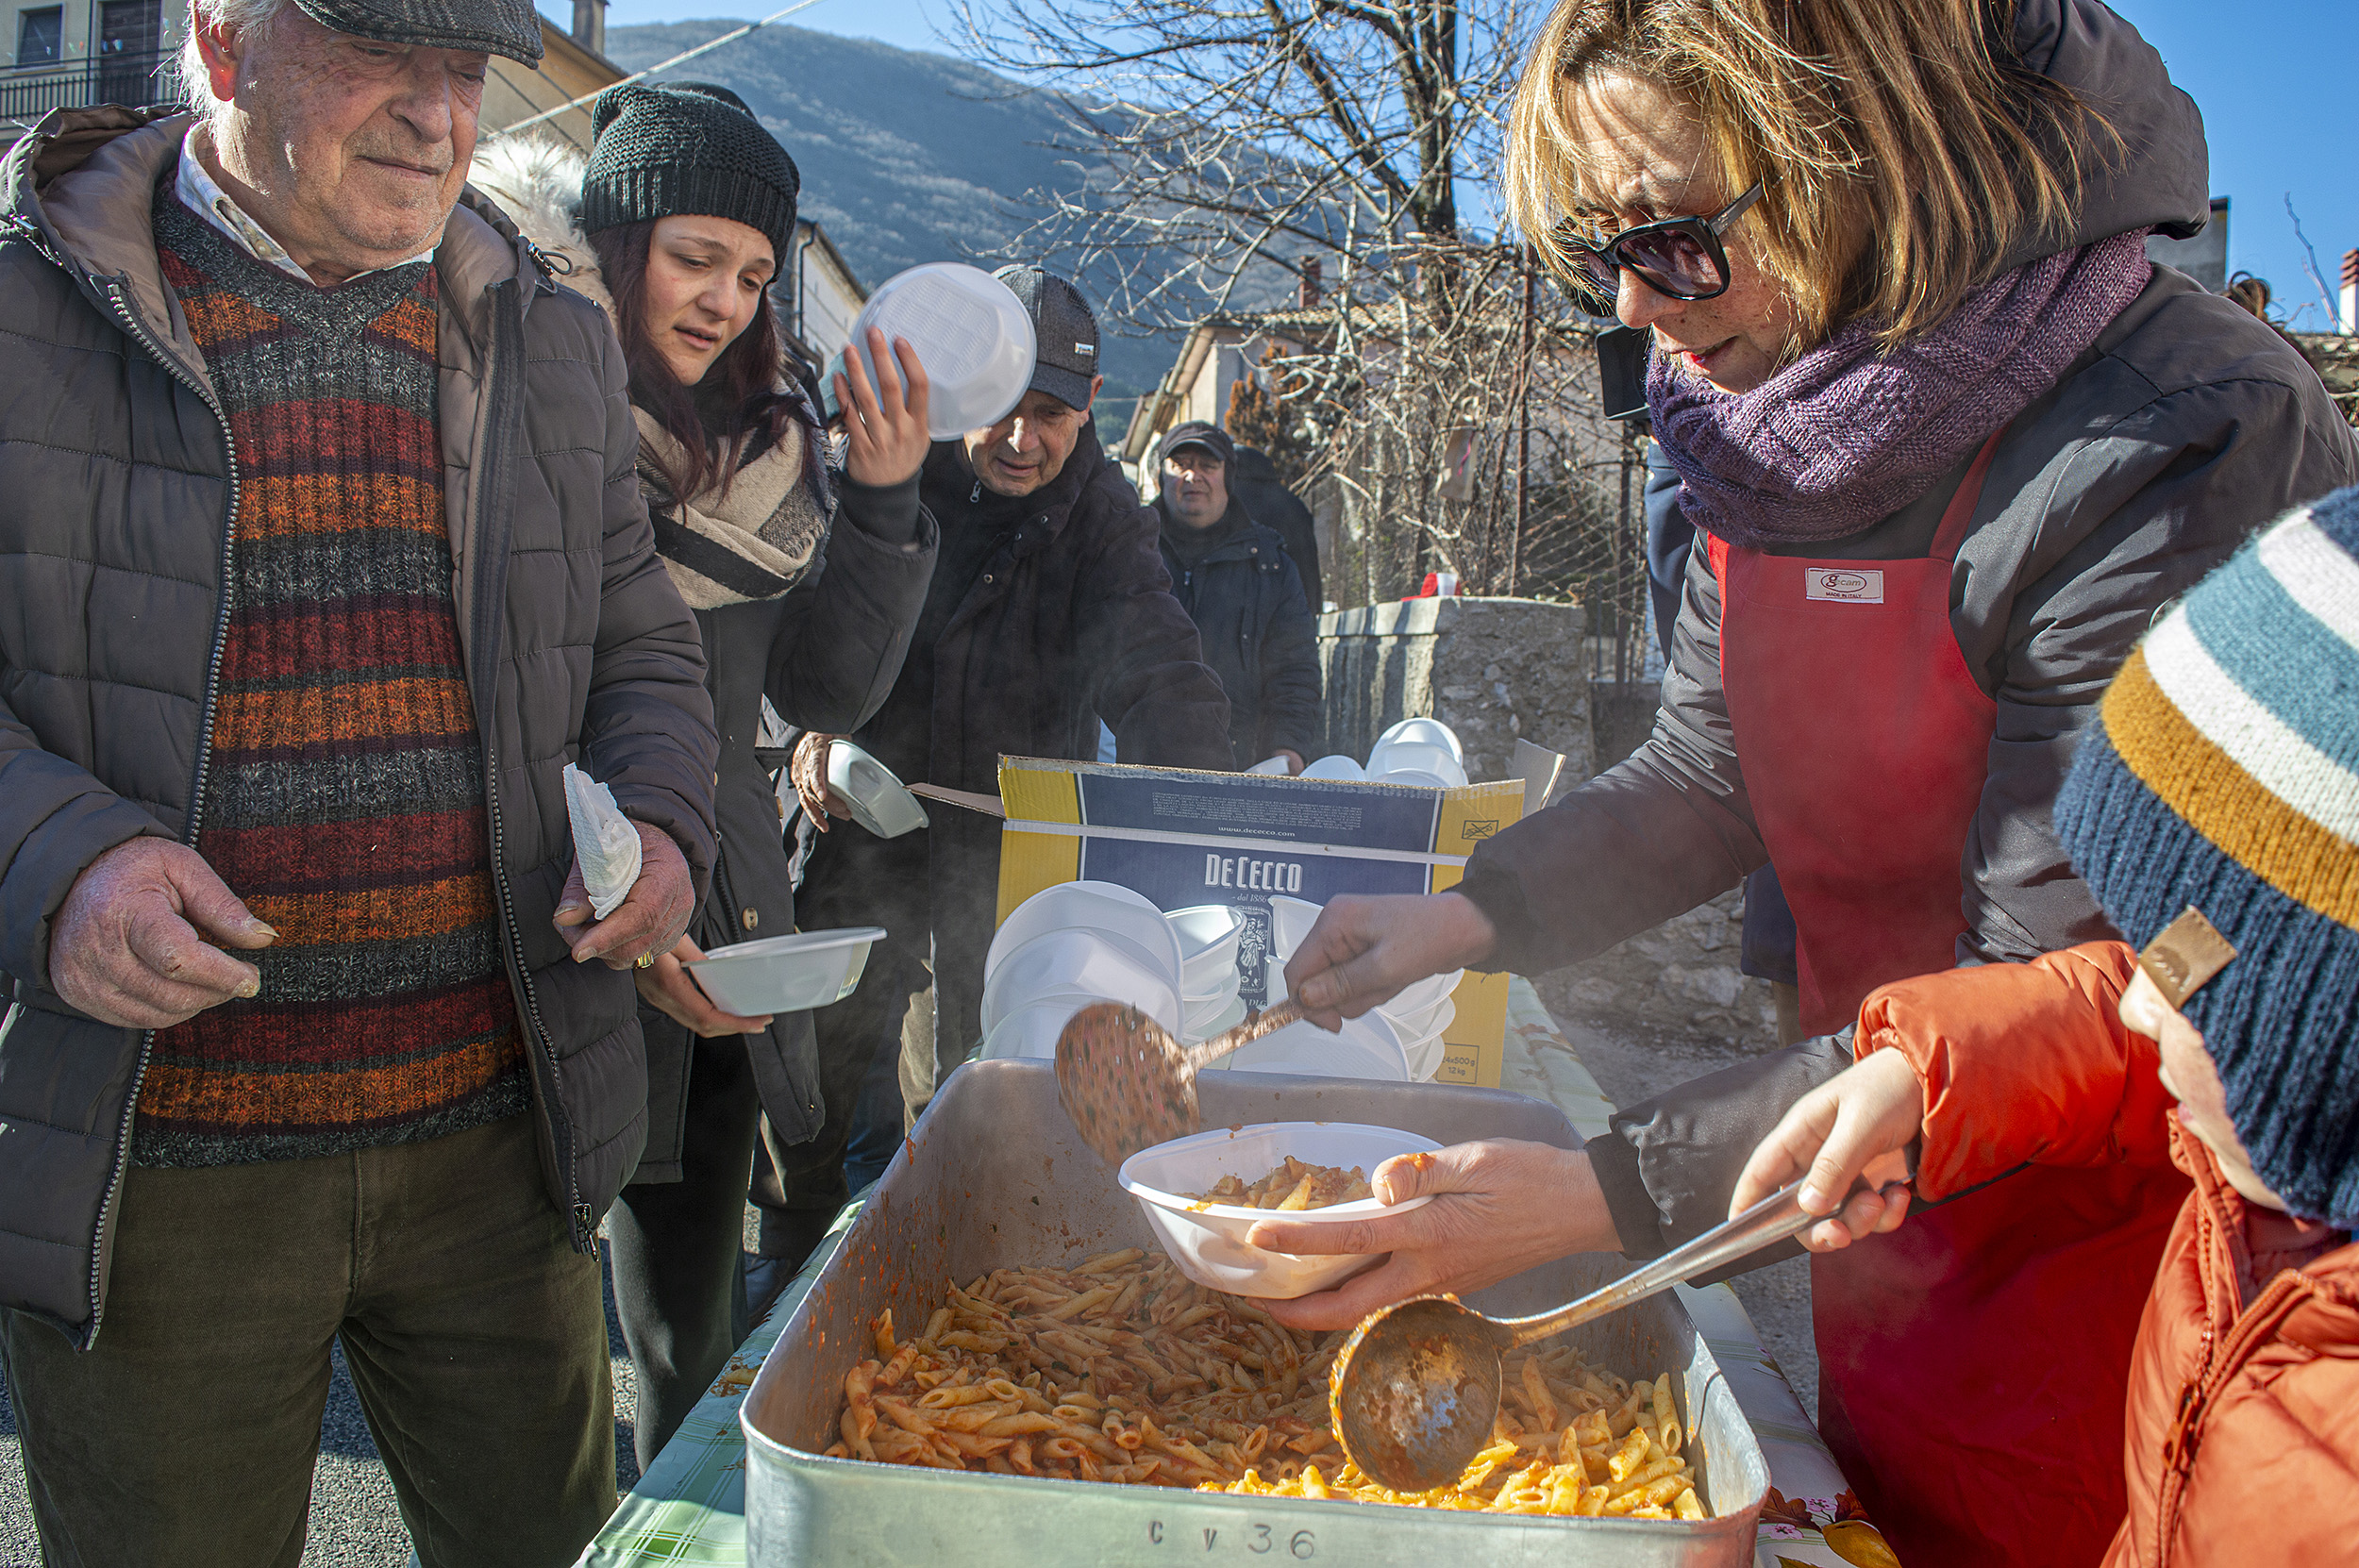 Roberto Monasterio, Distribuzione della pasta su Via del Pozzo, fotografia digitale